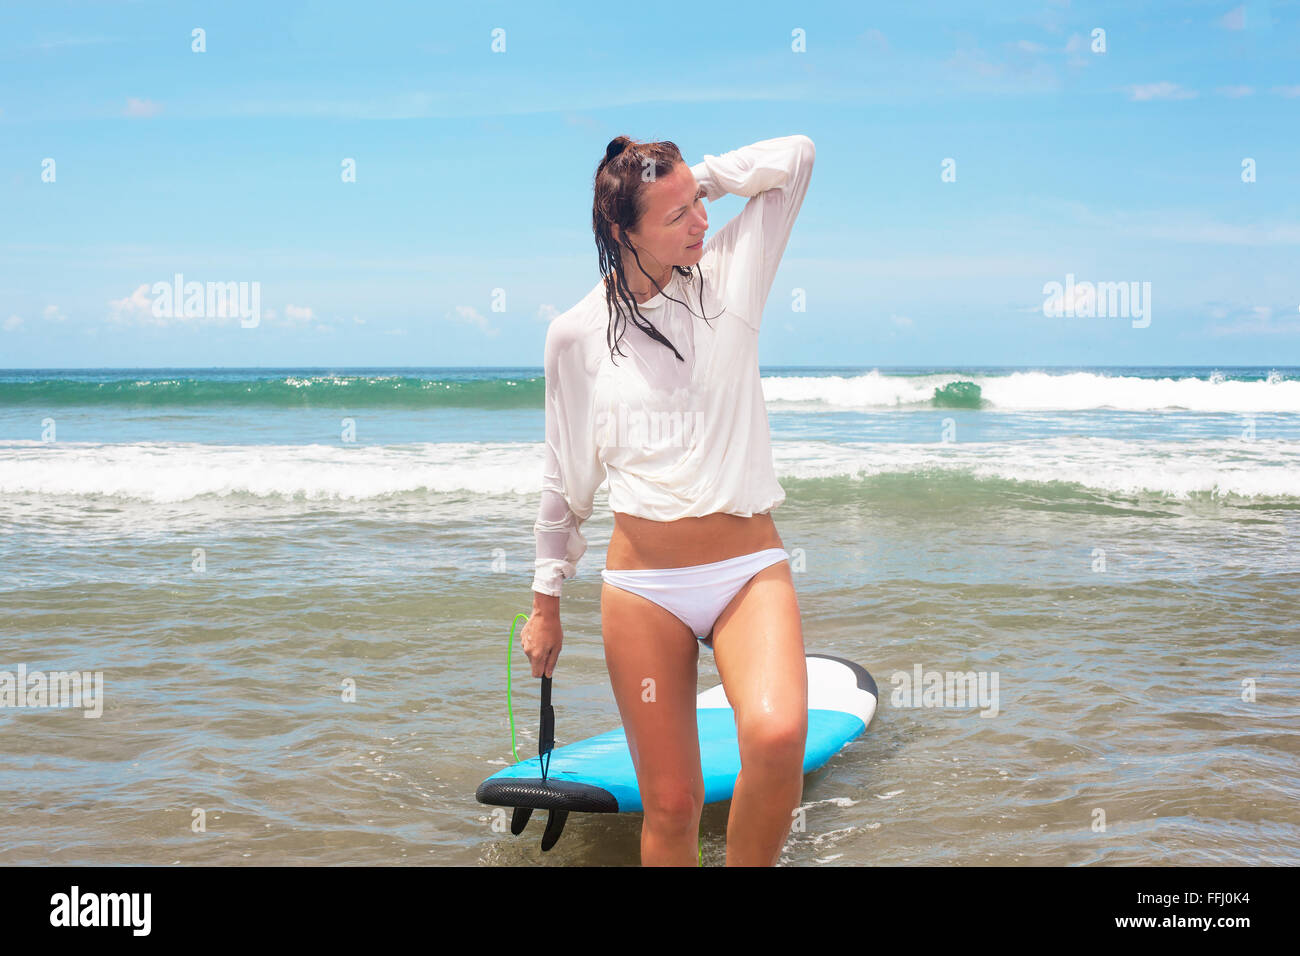 Mädchen auf den Wellen im Ozean mit ihrem Surfbrett. Stock Bild Stockfoto